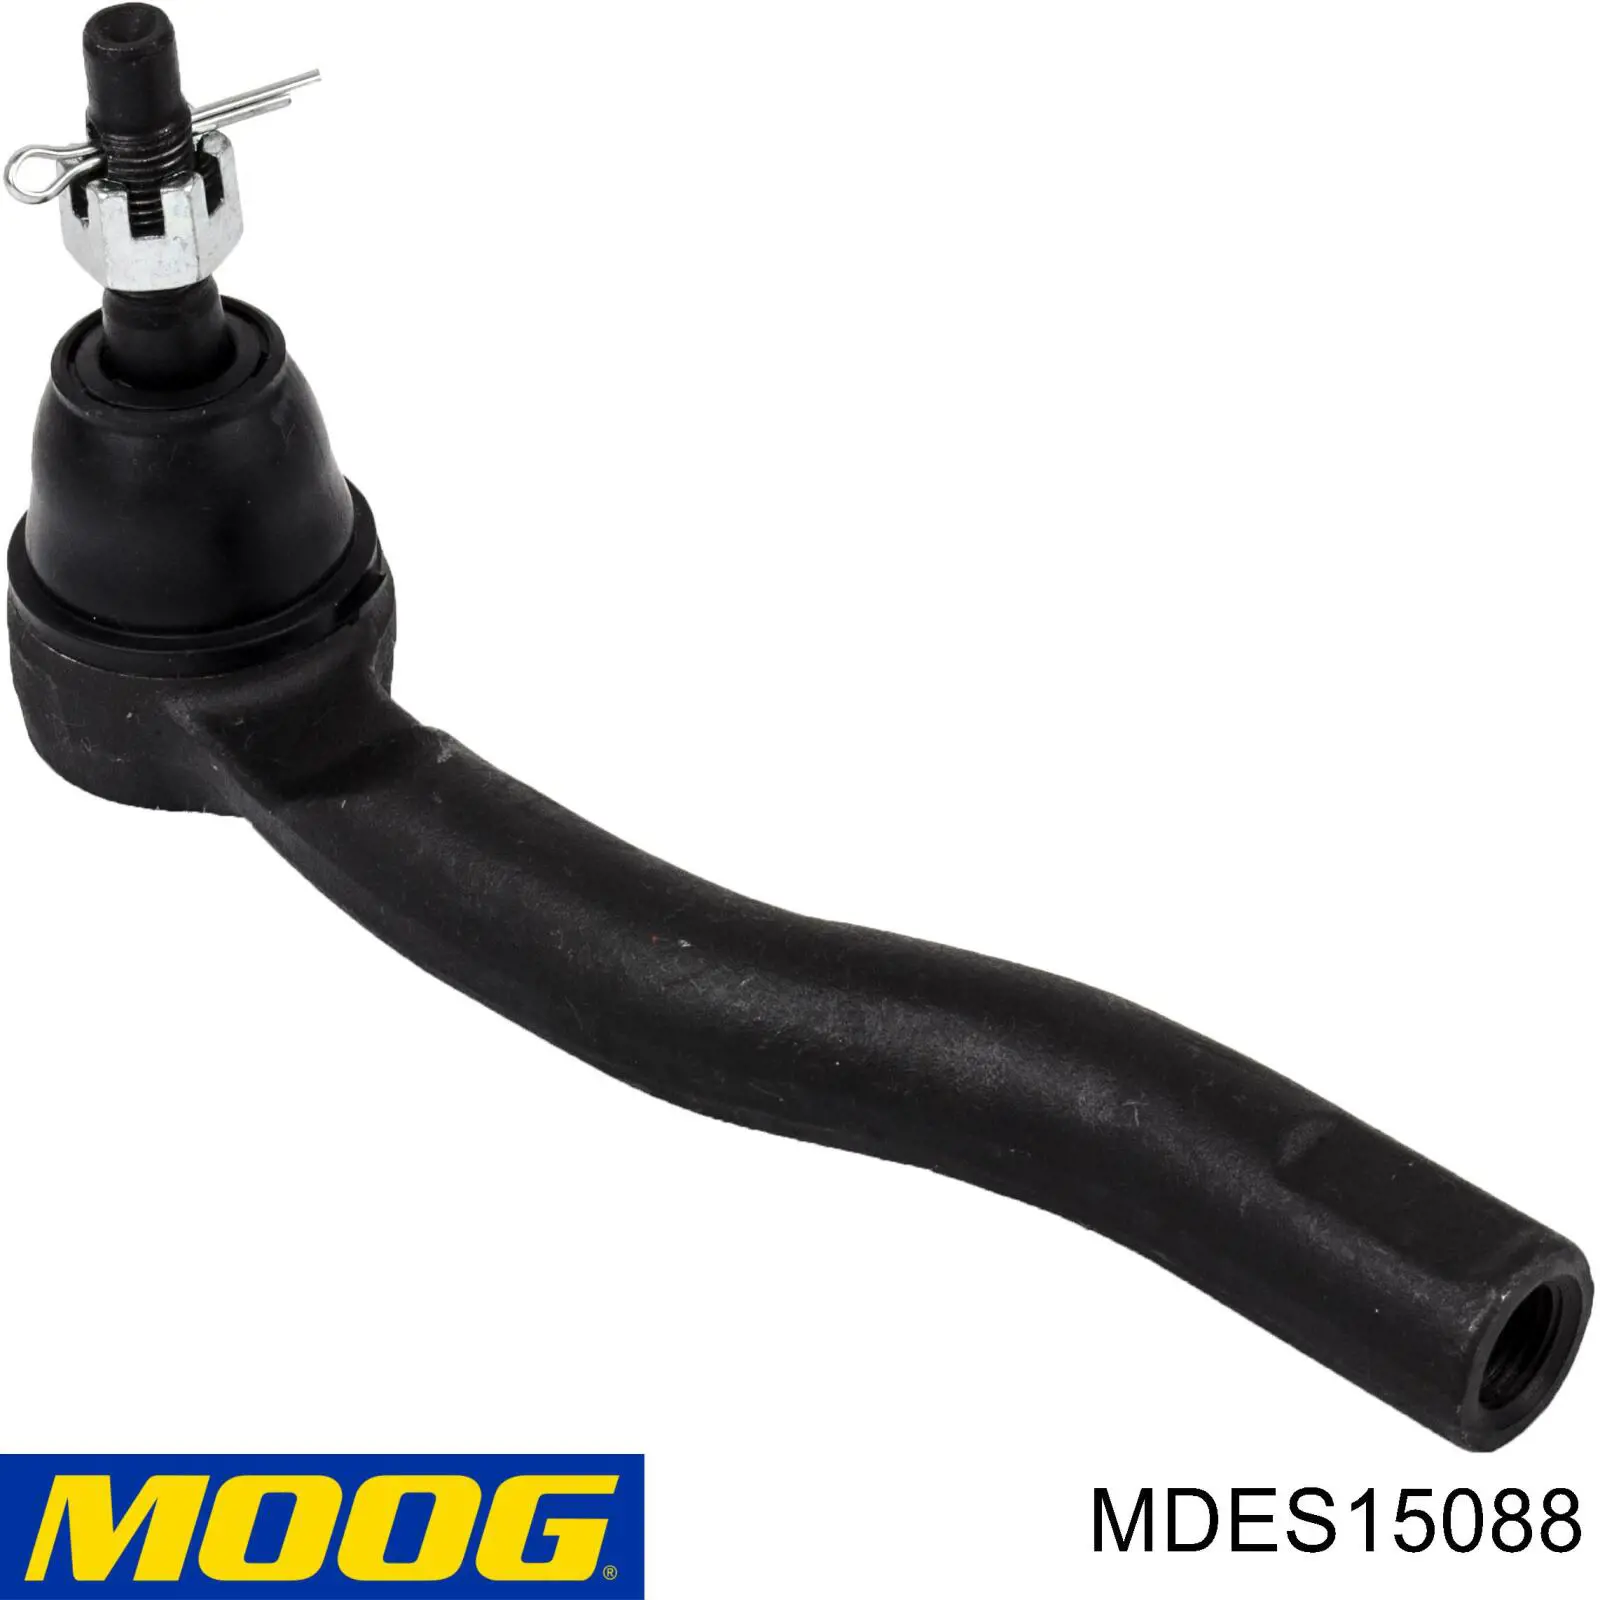 Rótula barra de acoplamiento exterior MDES15088 Moog